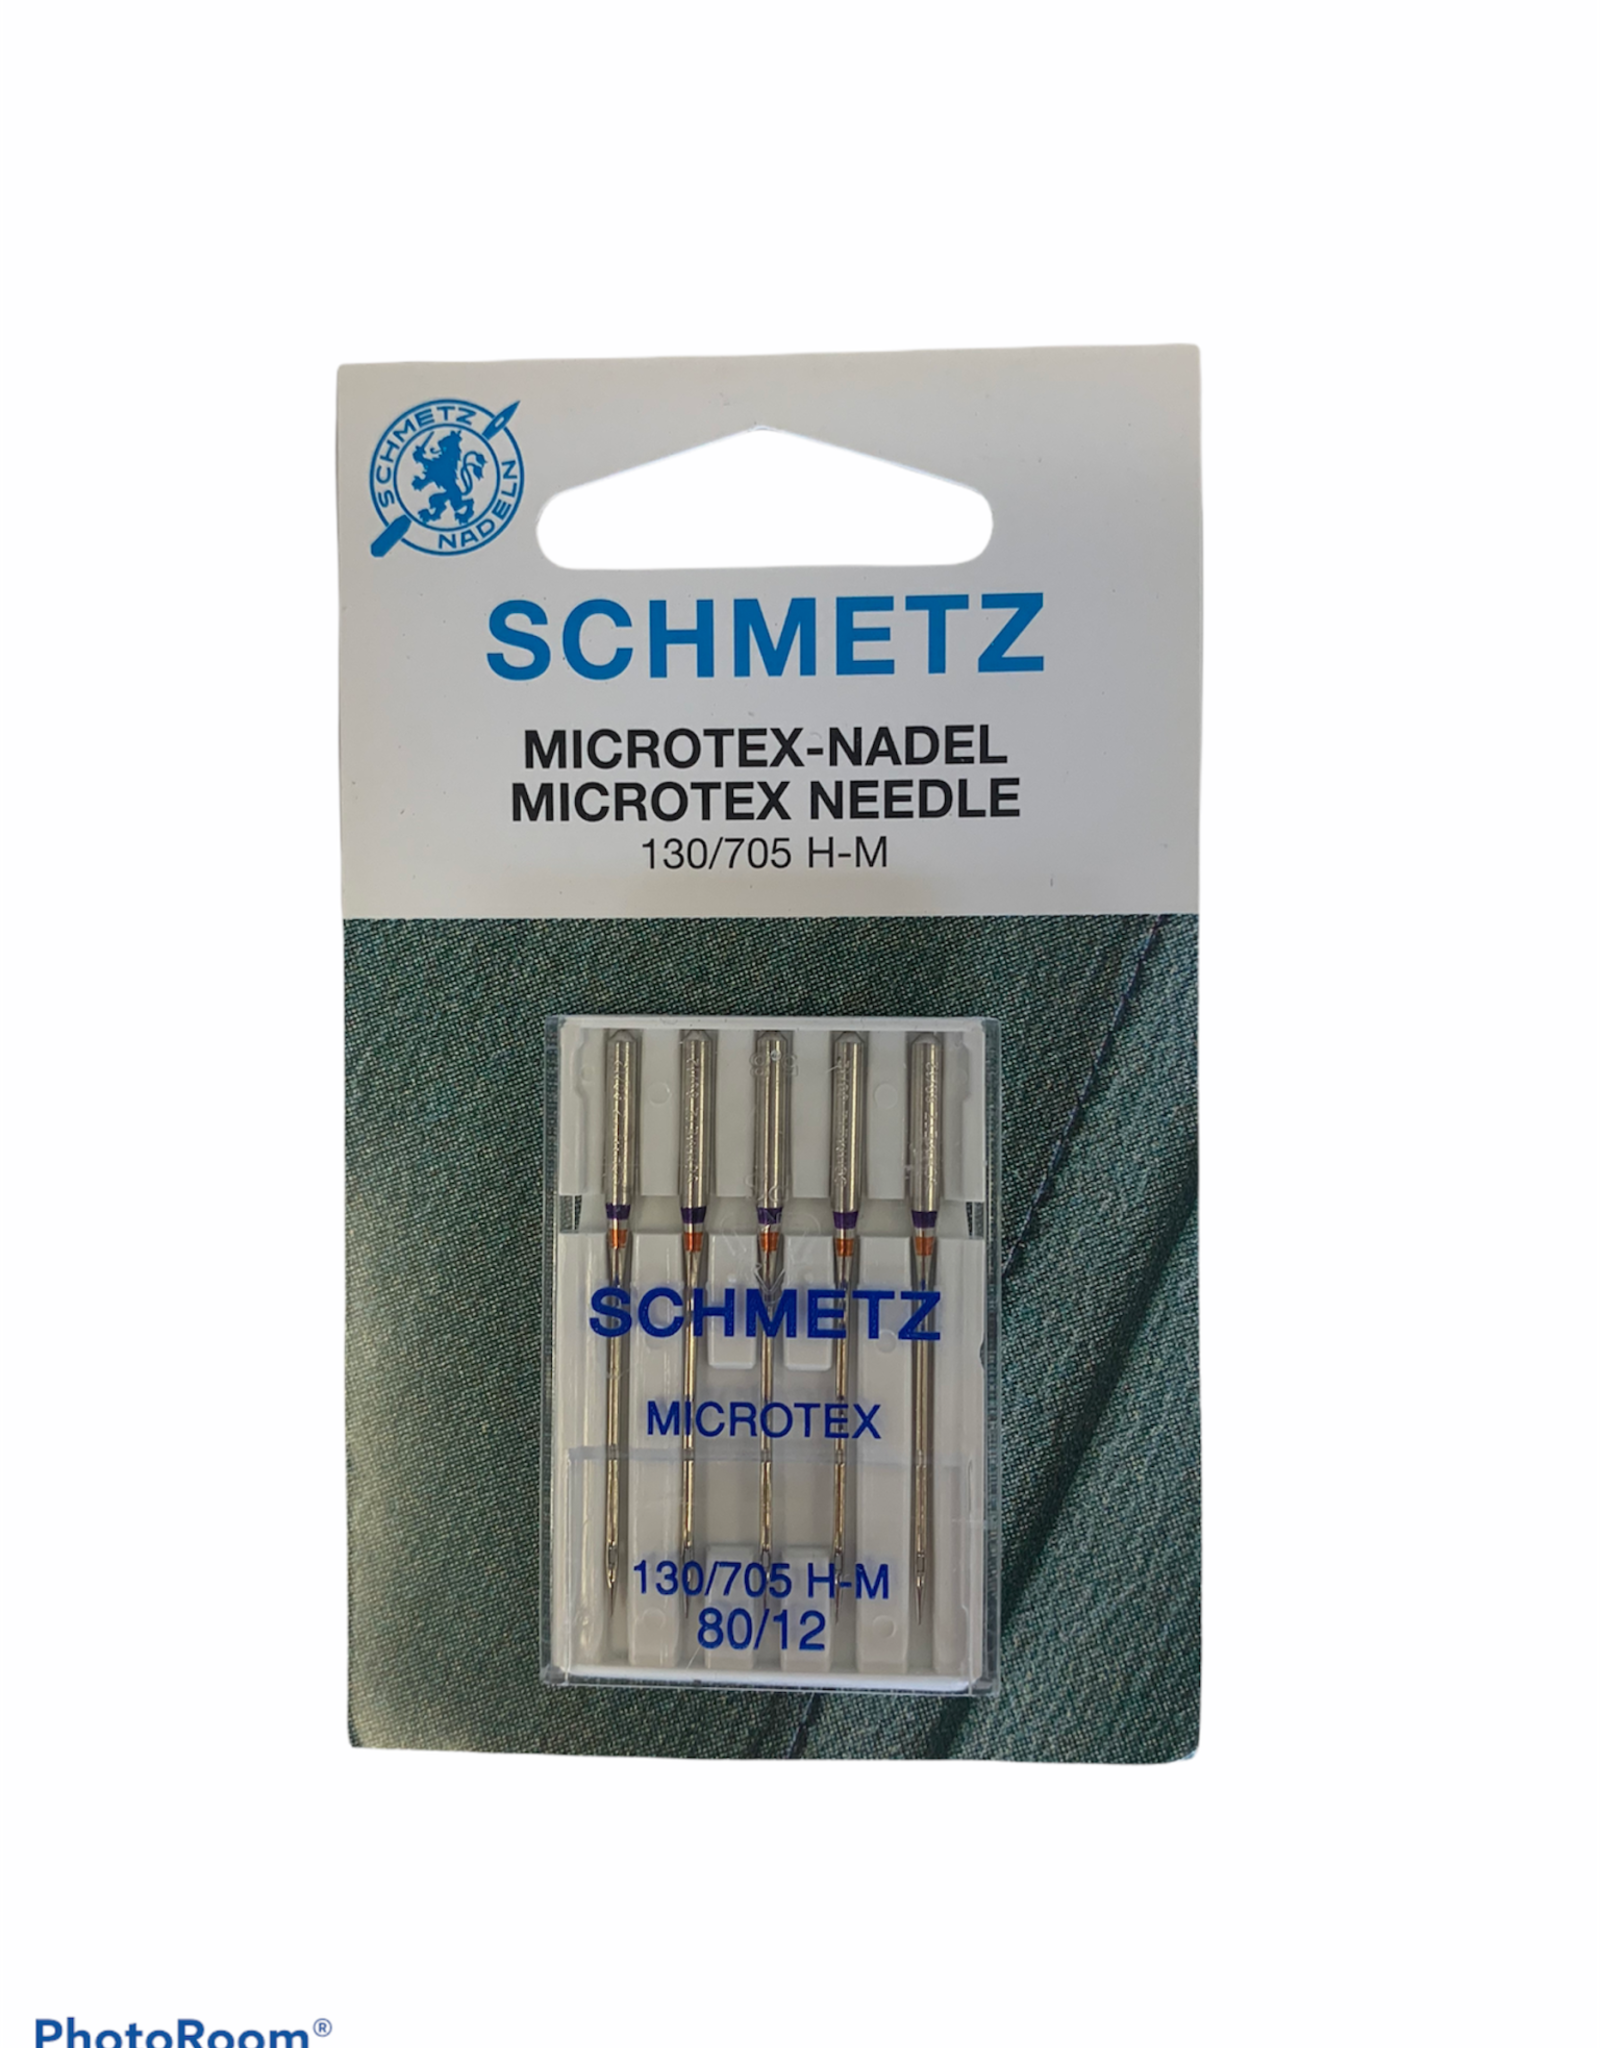 Schmetz Schmetz Microtex Needle 80/12, 130/705 H-M